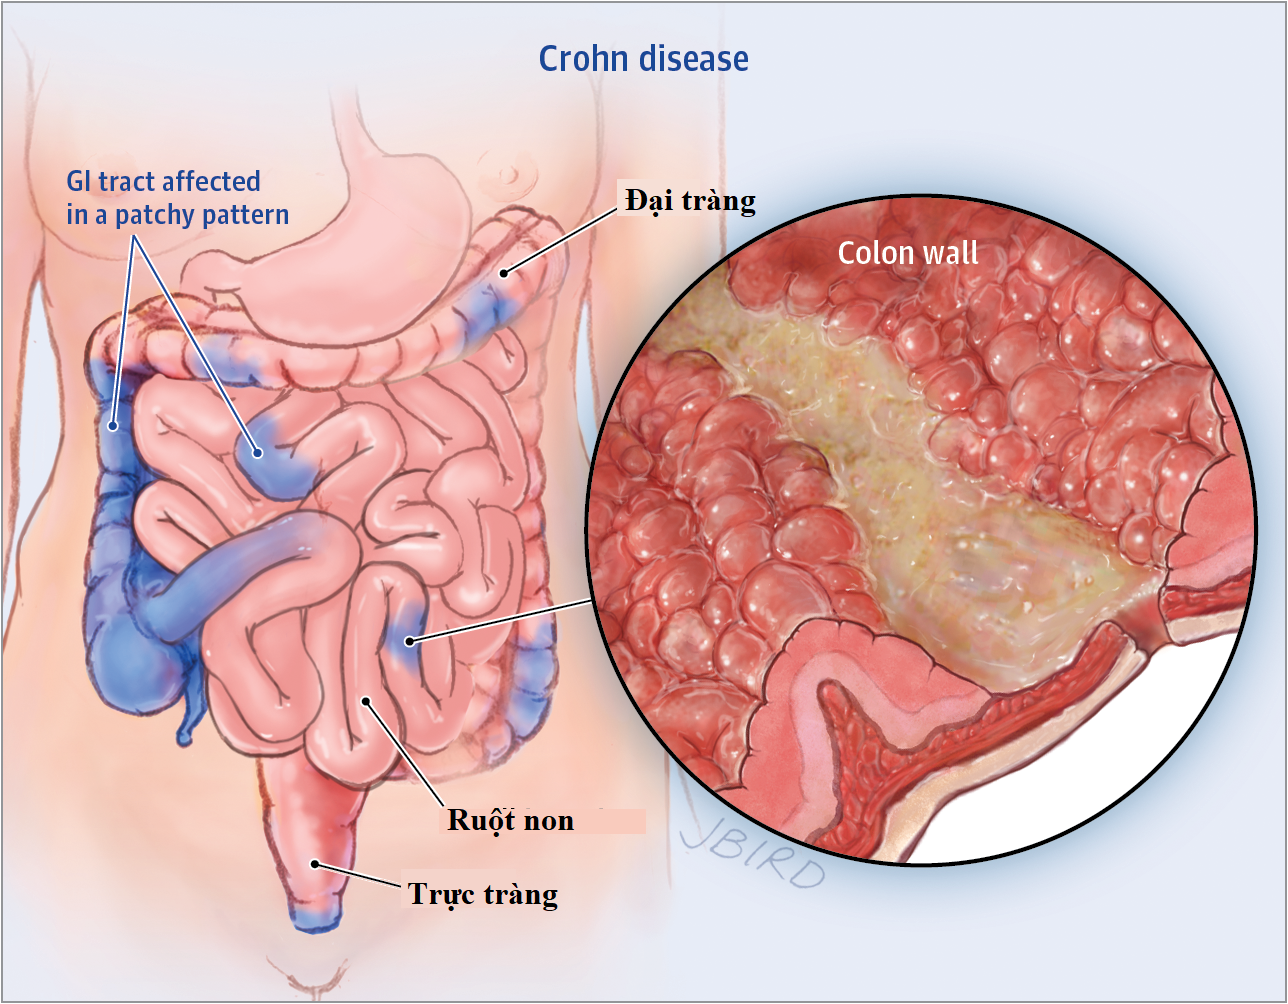 Cắt bỏ ruột điều trị bệnh Crohn là gì? - quy trình thực hiện và hồi phục sức khỏe